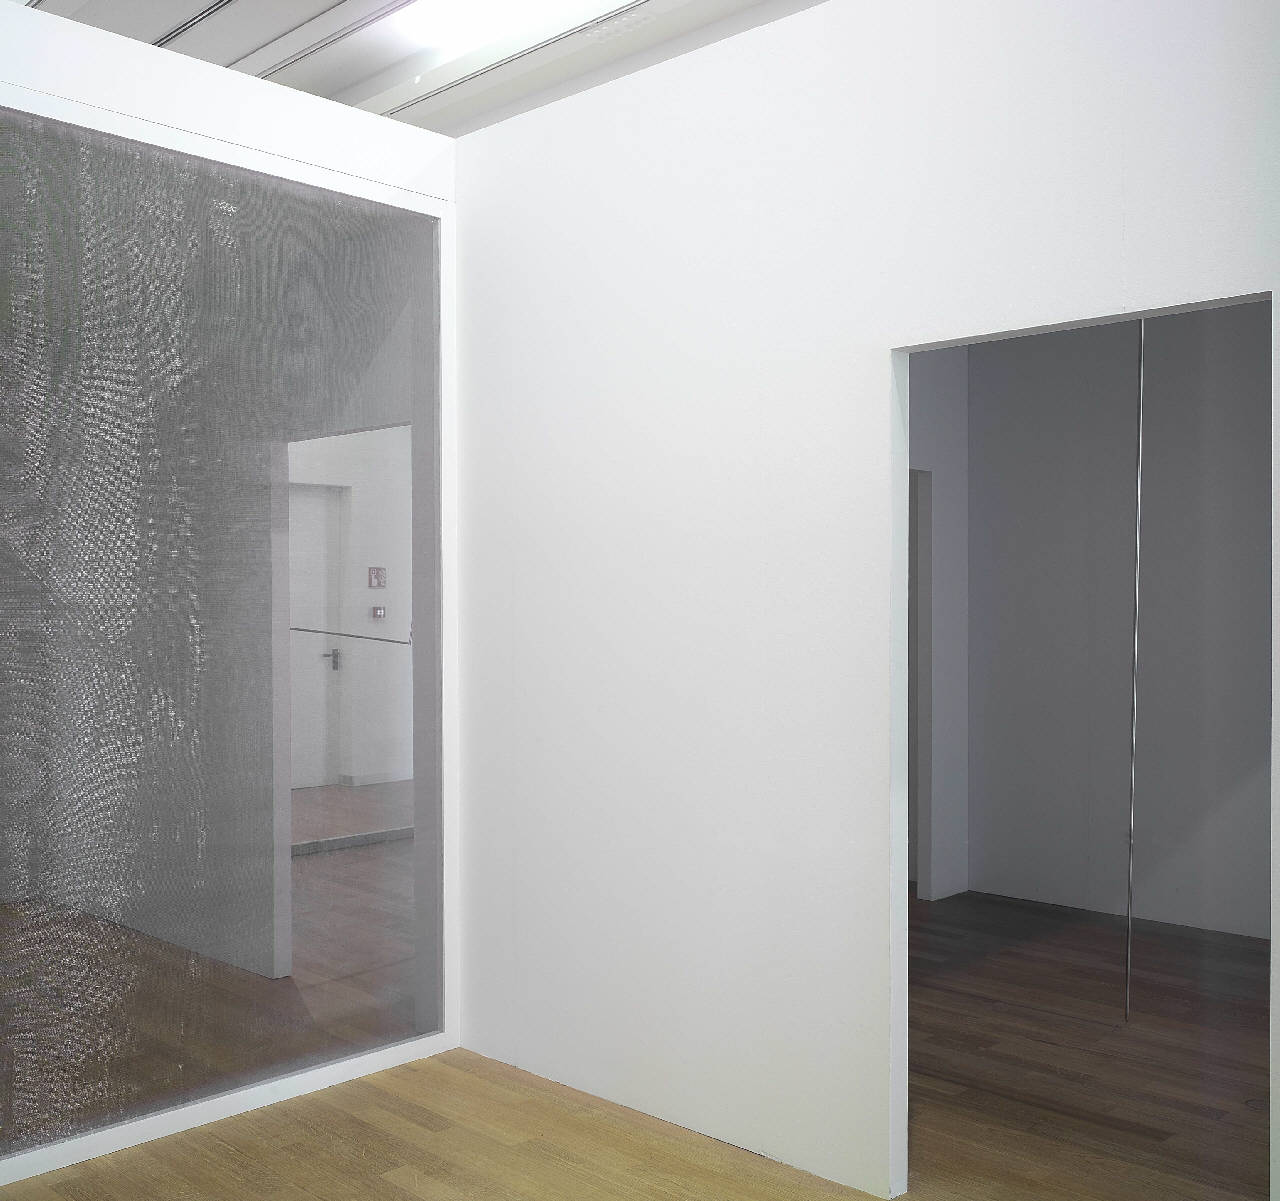 Asta, segmento acciaio inossidabile posto in verticale tra pavimento e soffitto (scultura) di Fabro, Luciano (sec. XX)